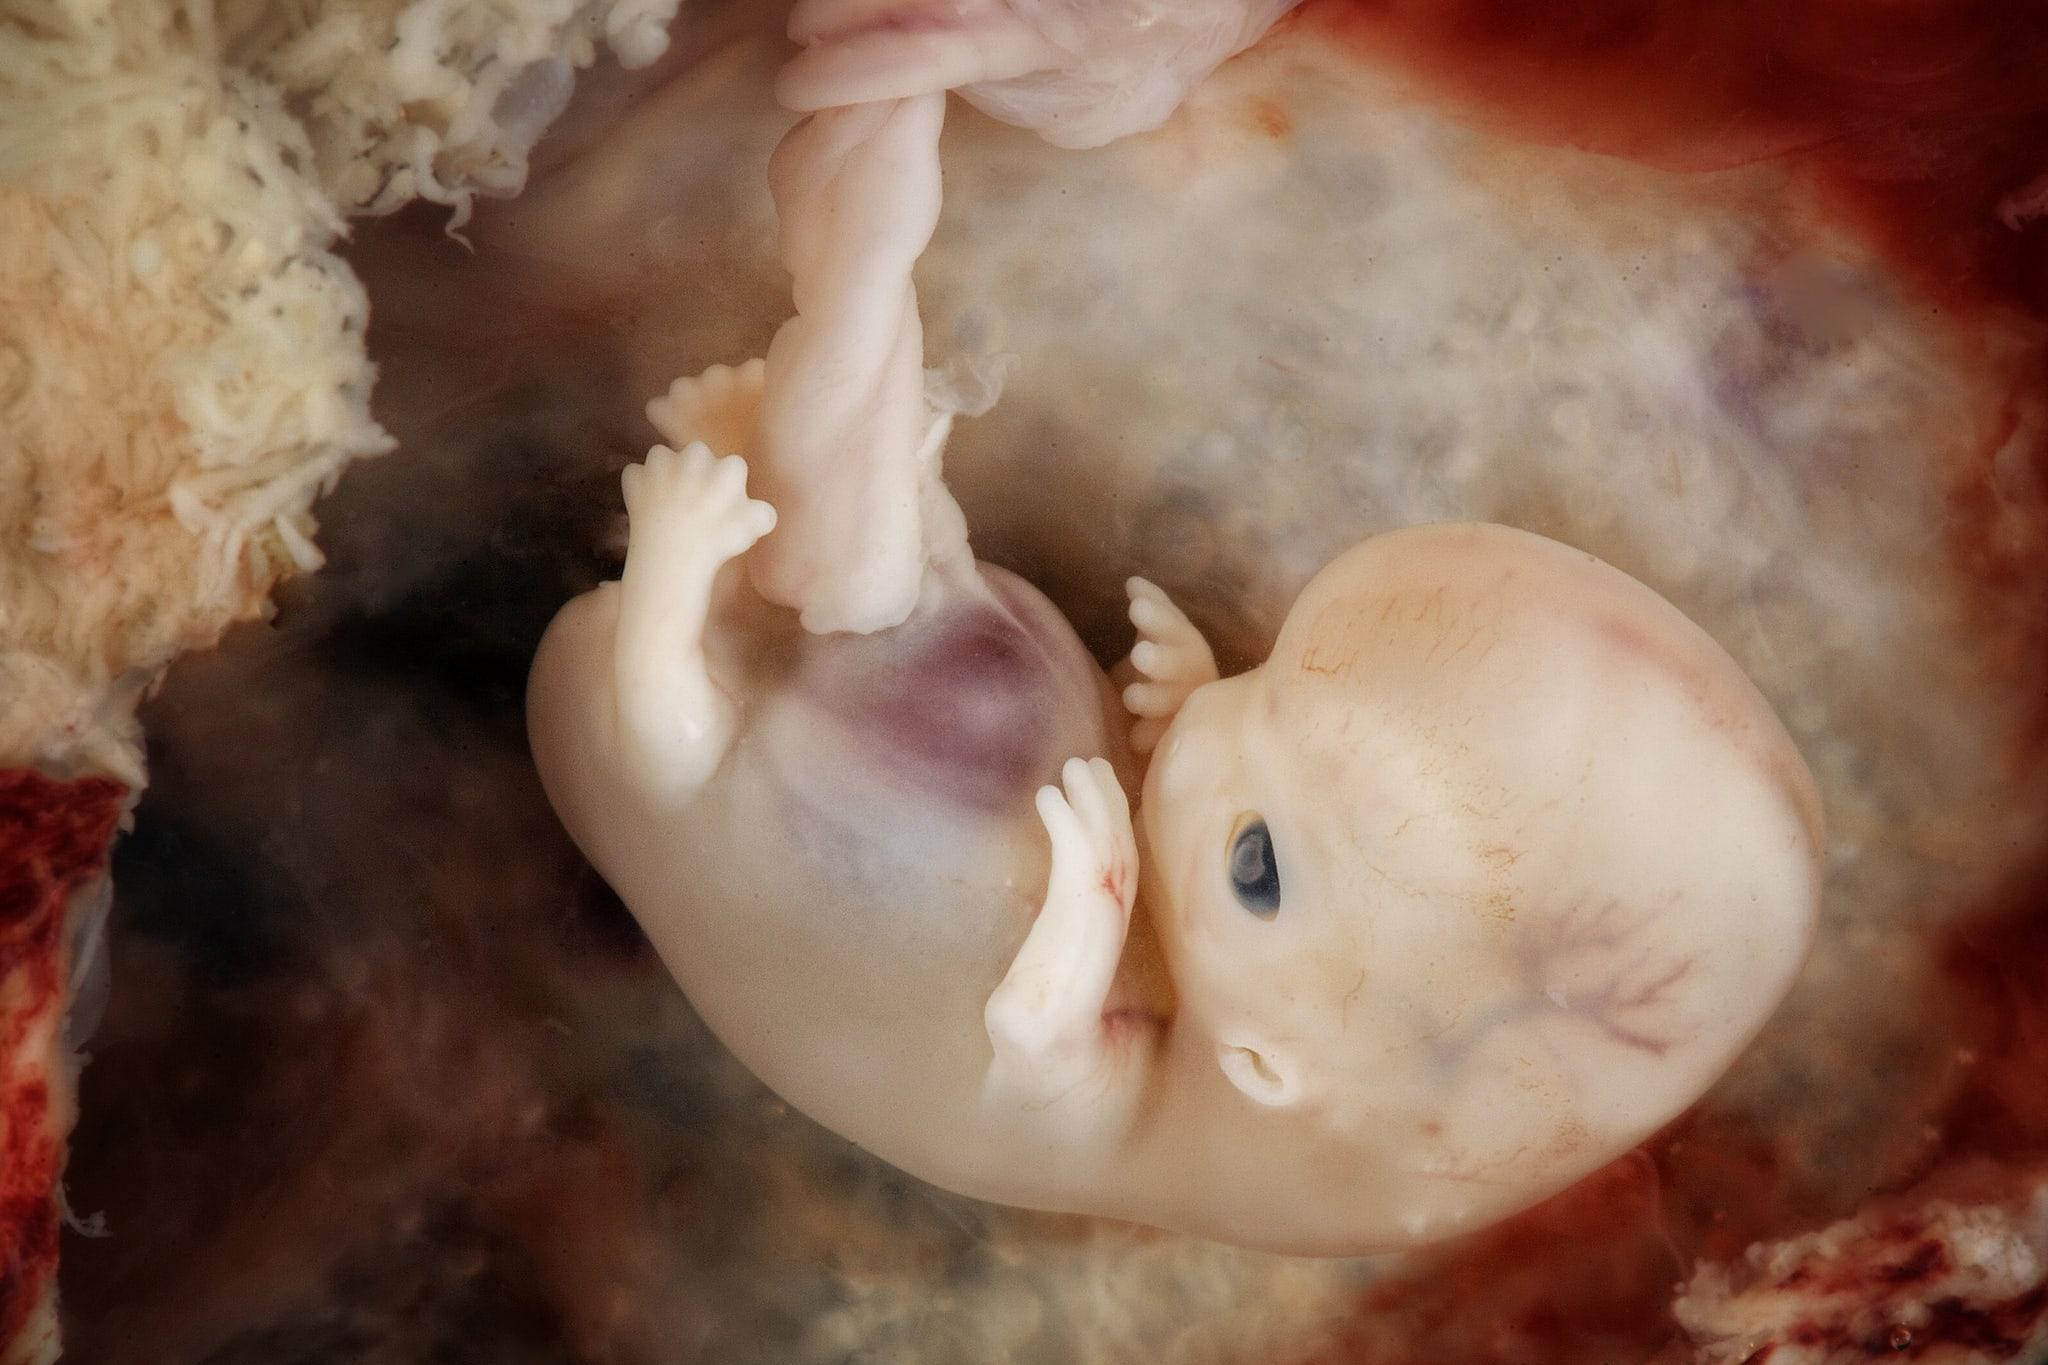 Ученые предложили новый взгляд на развитие эмбрионов